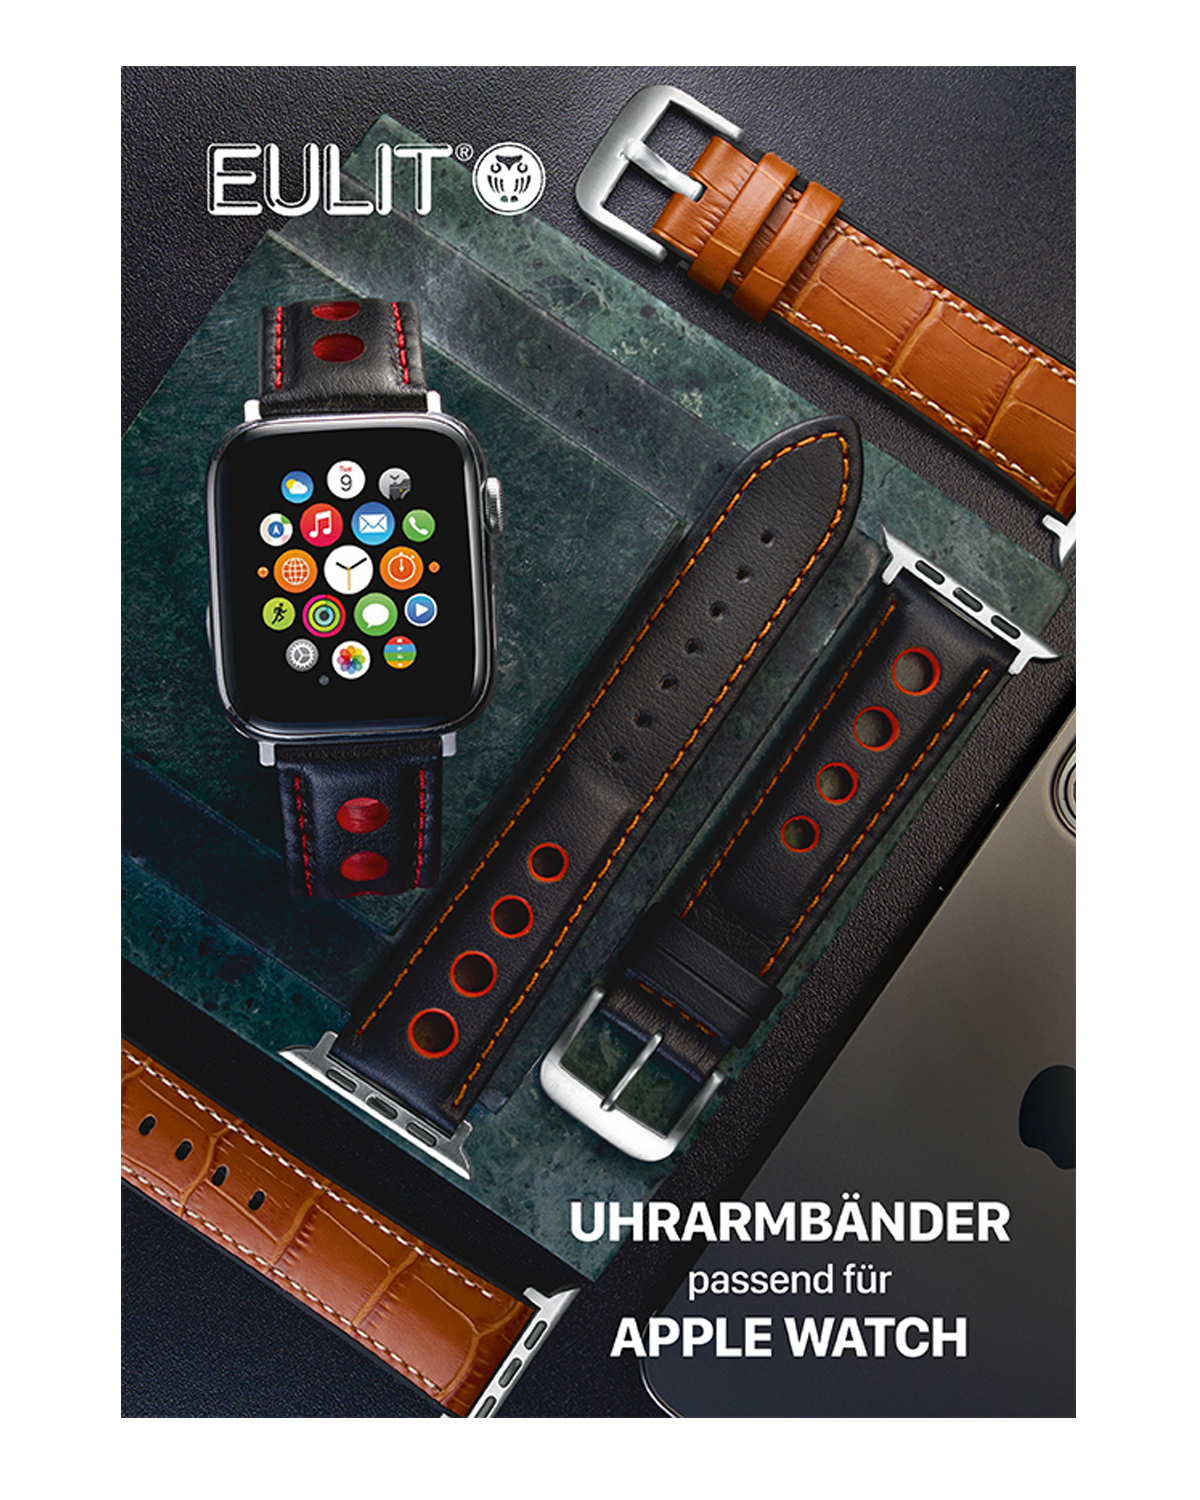 Katalog EULIT-Uhrarmbänder passend für Apple Watch